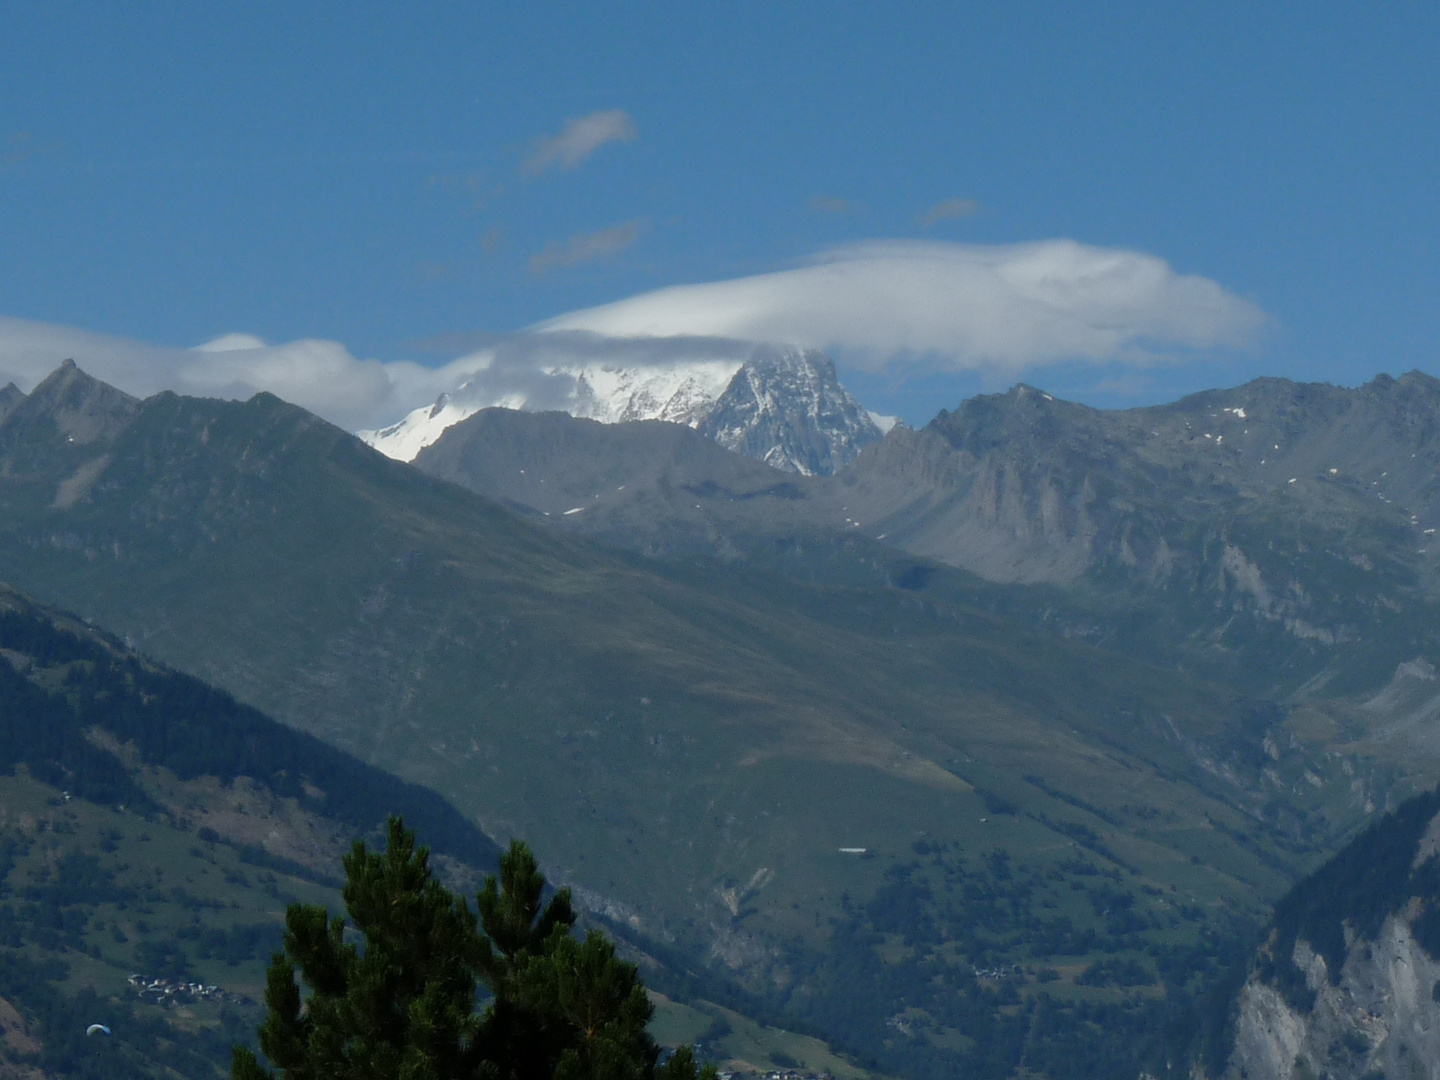 Le Mont Blanc cet été